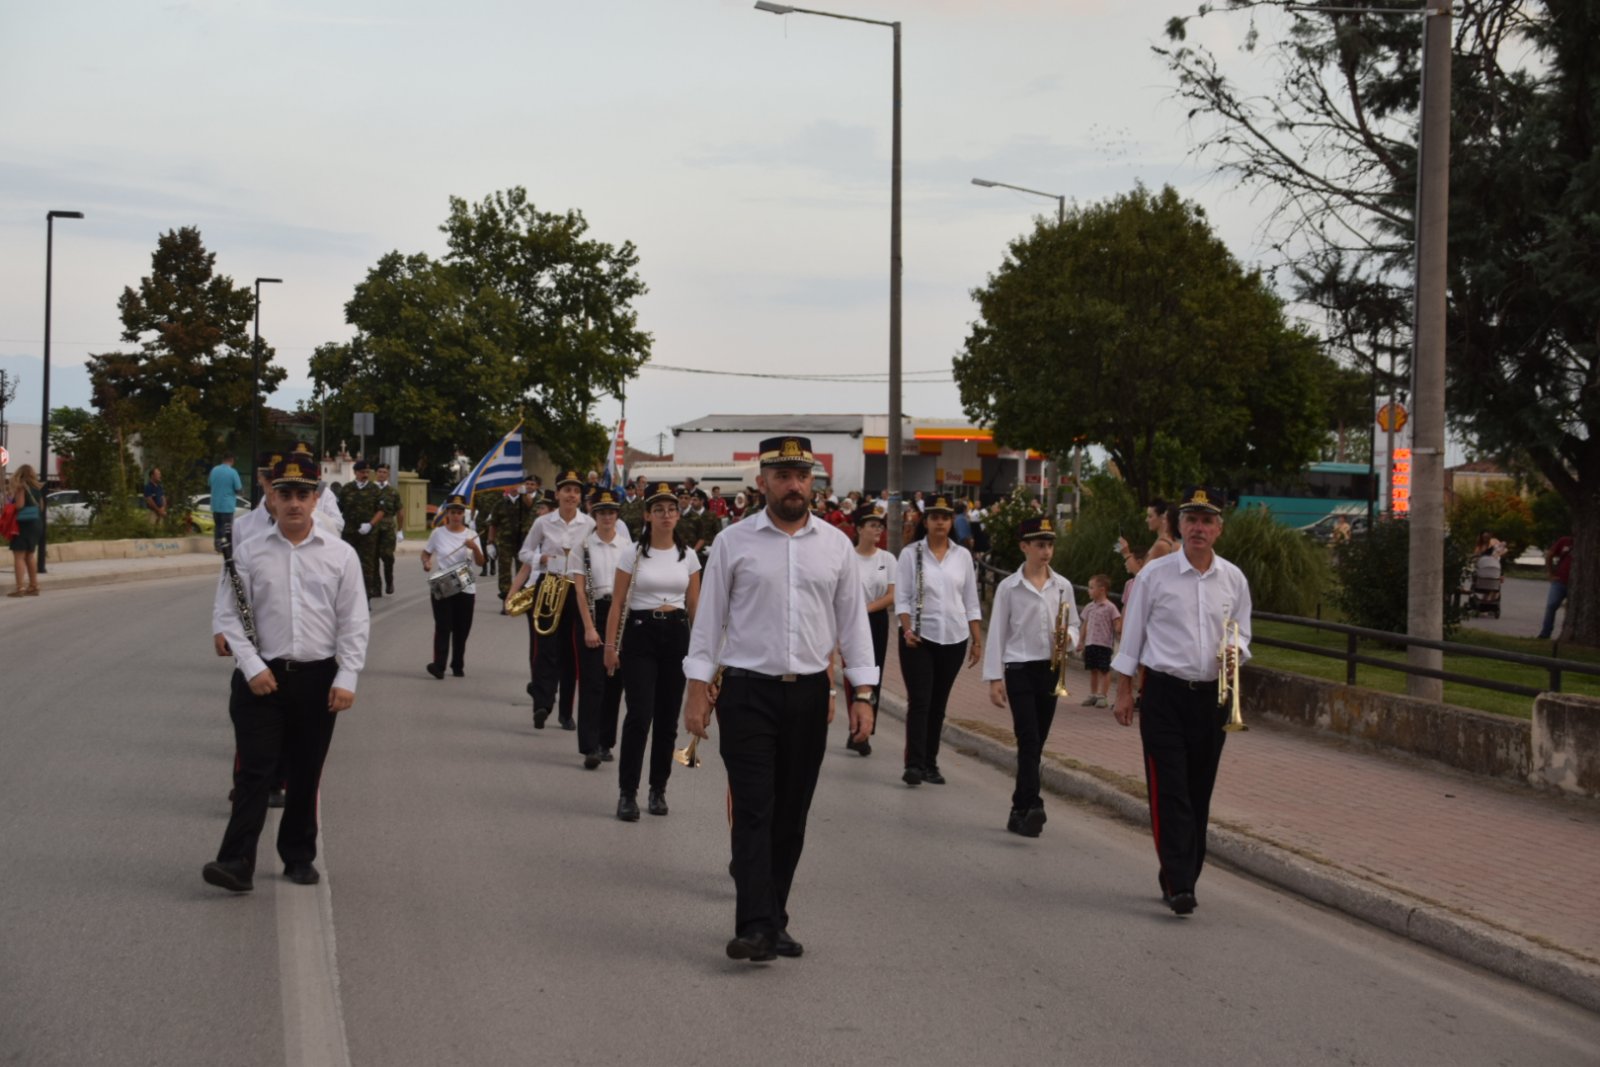 Η Φιλαρμονική του Δήμου Τυρνάβου στην εκδήλωση αναπαράσταση της εισόδου του Ελληνικού στρατού του Τυρνάβου